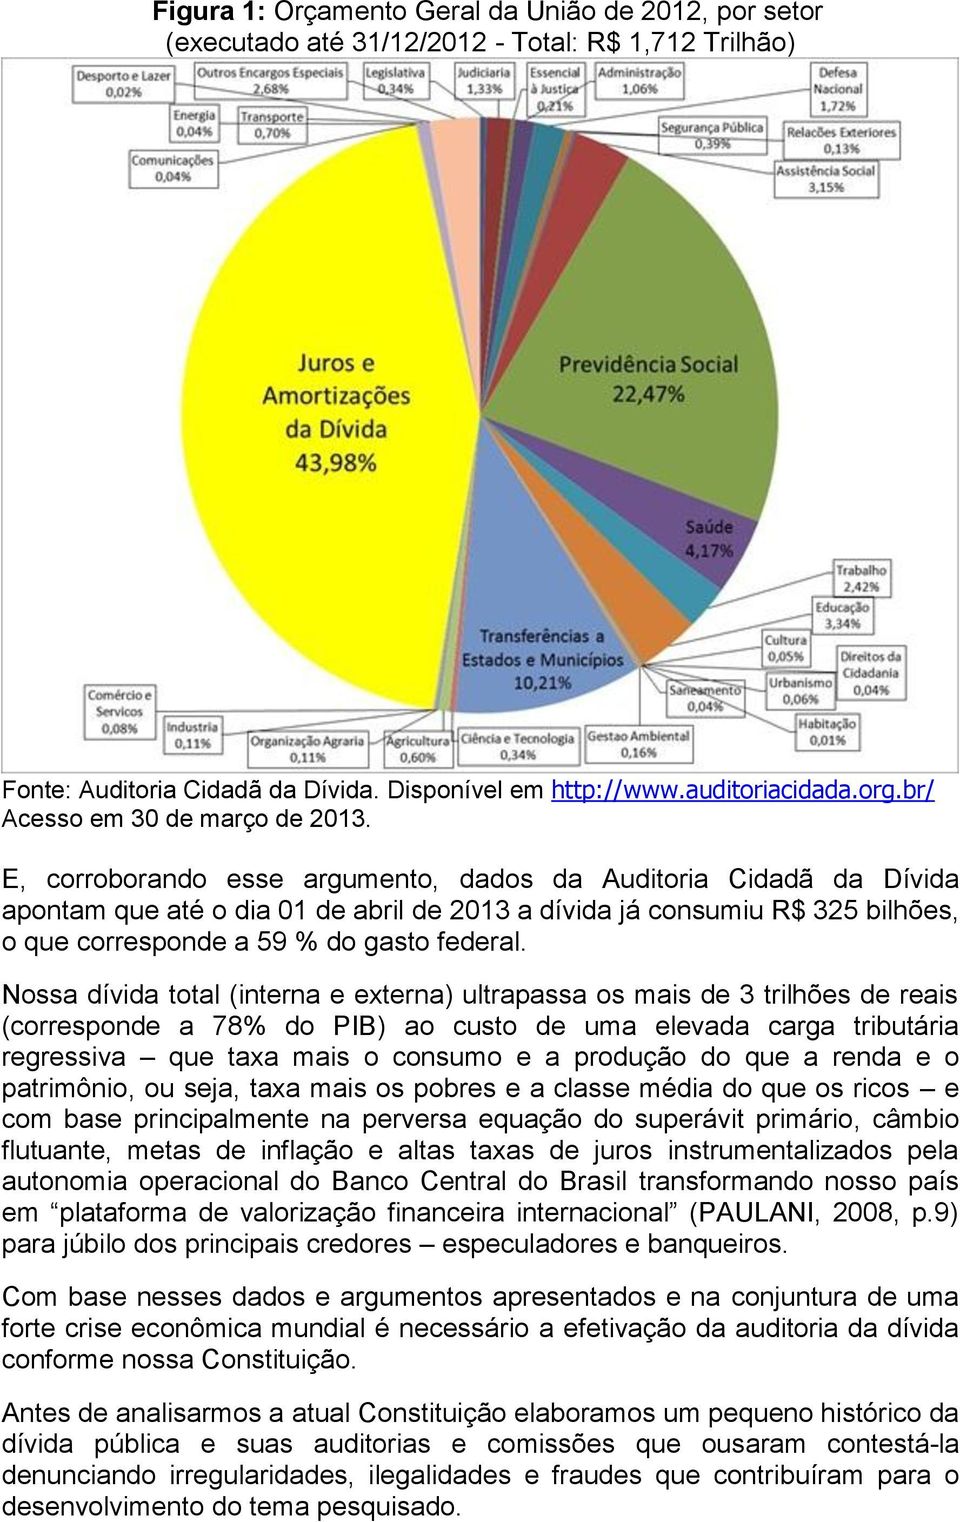 E, corroborando esse argumento, dados da Auditoria Cidadã da Dívida apontam que até o dia 01 de abril de 2013 a dívida já consumiu R$ 325 bilhões, o que corresponde a 59 % do gasto federal.